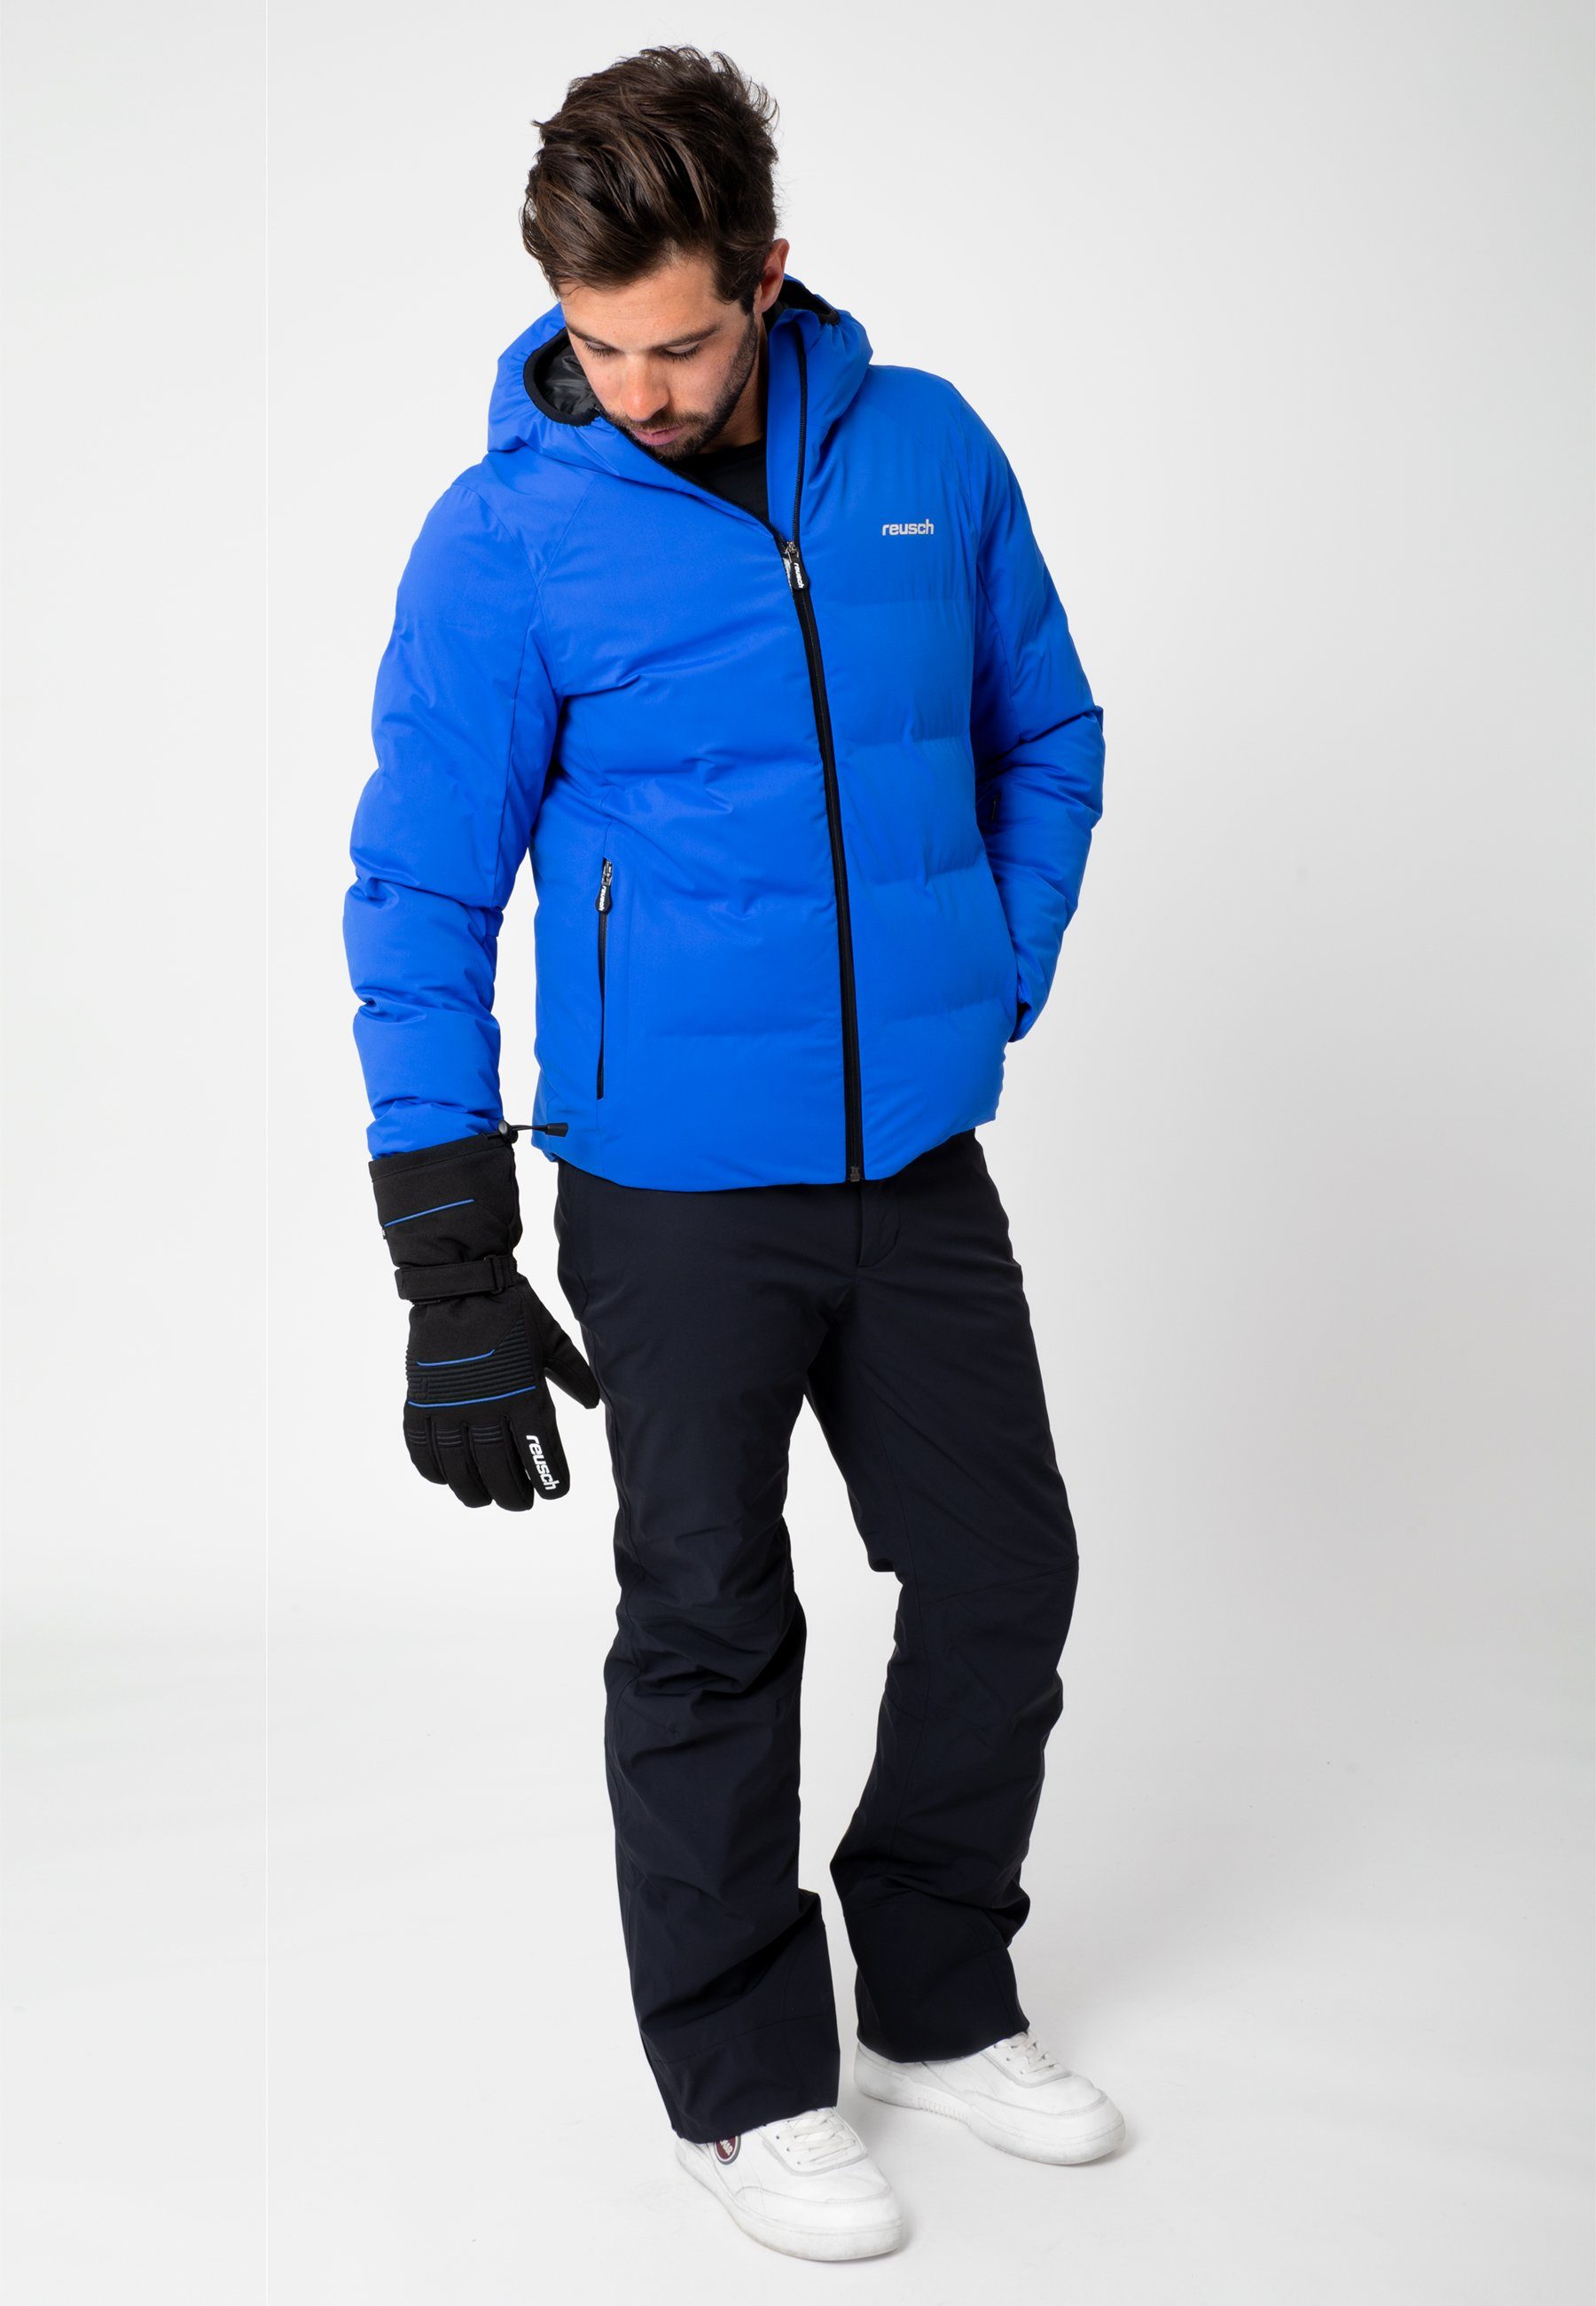 Skihandschuhe Reusch XT blau-schwarz sportlichem Design Crosby R-TEX® in